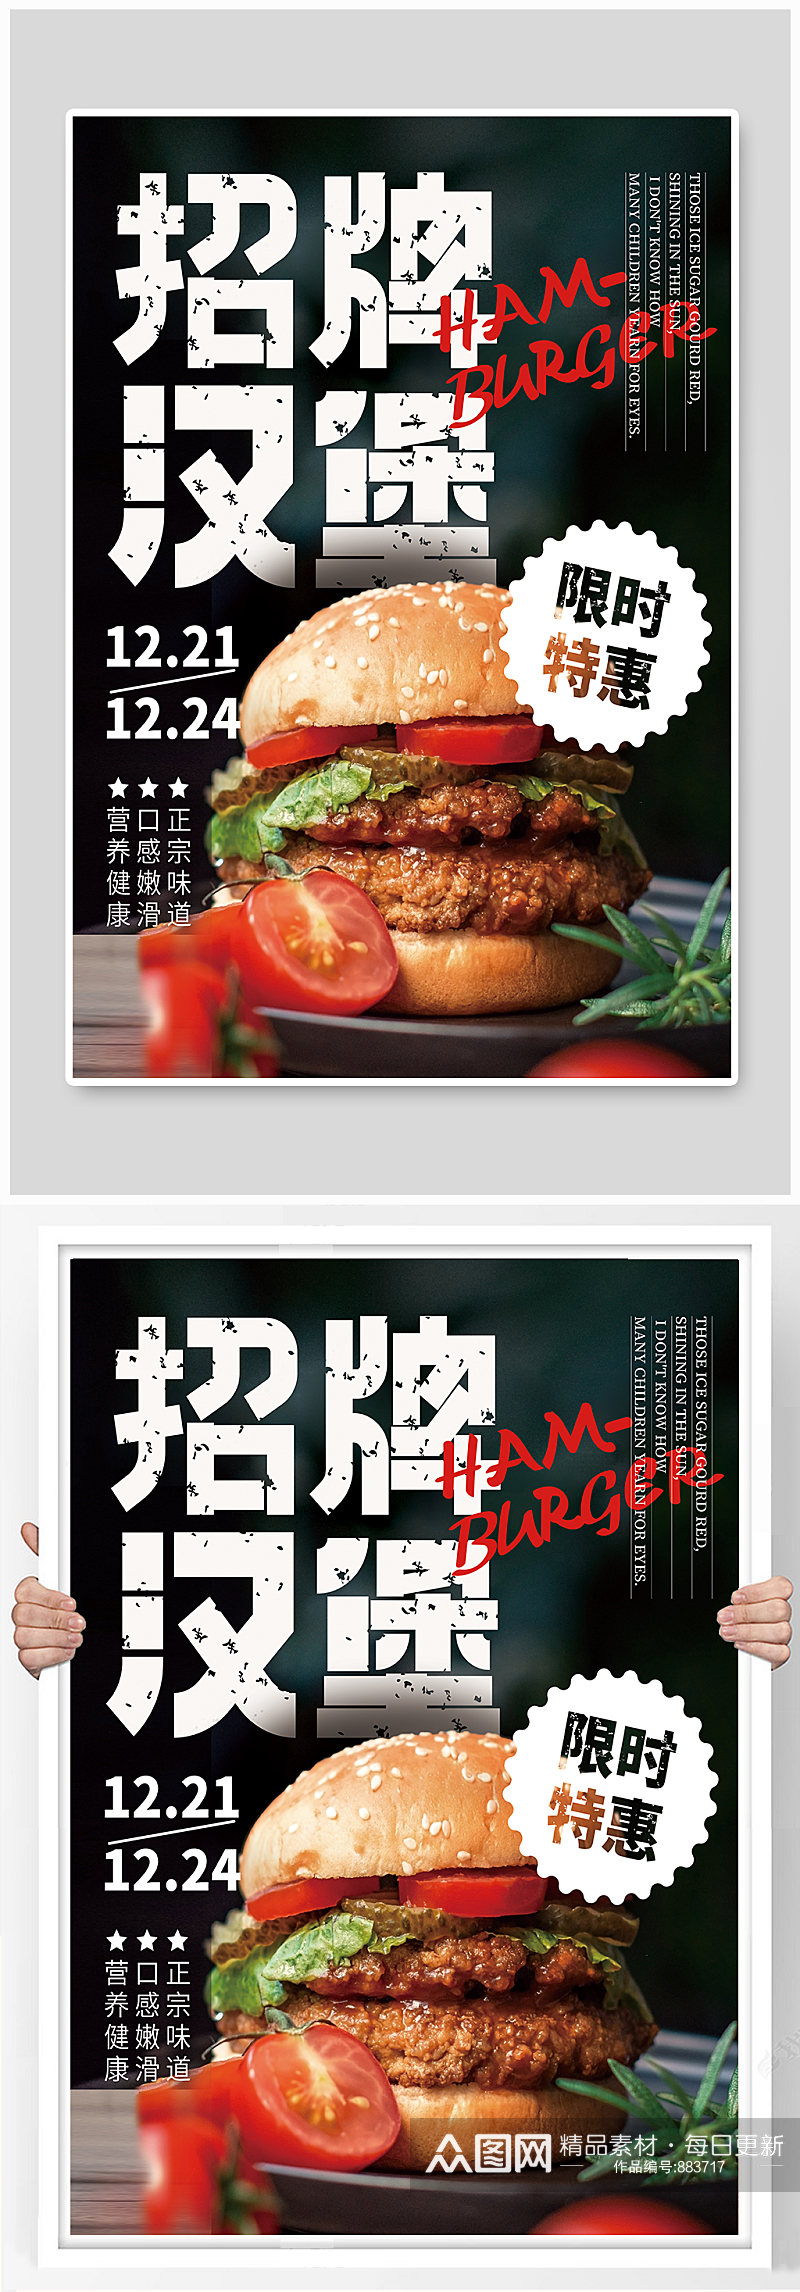 快餐店汉堡宣传海报素材